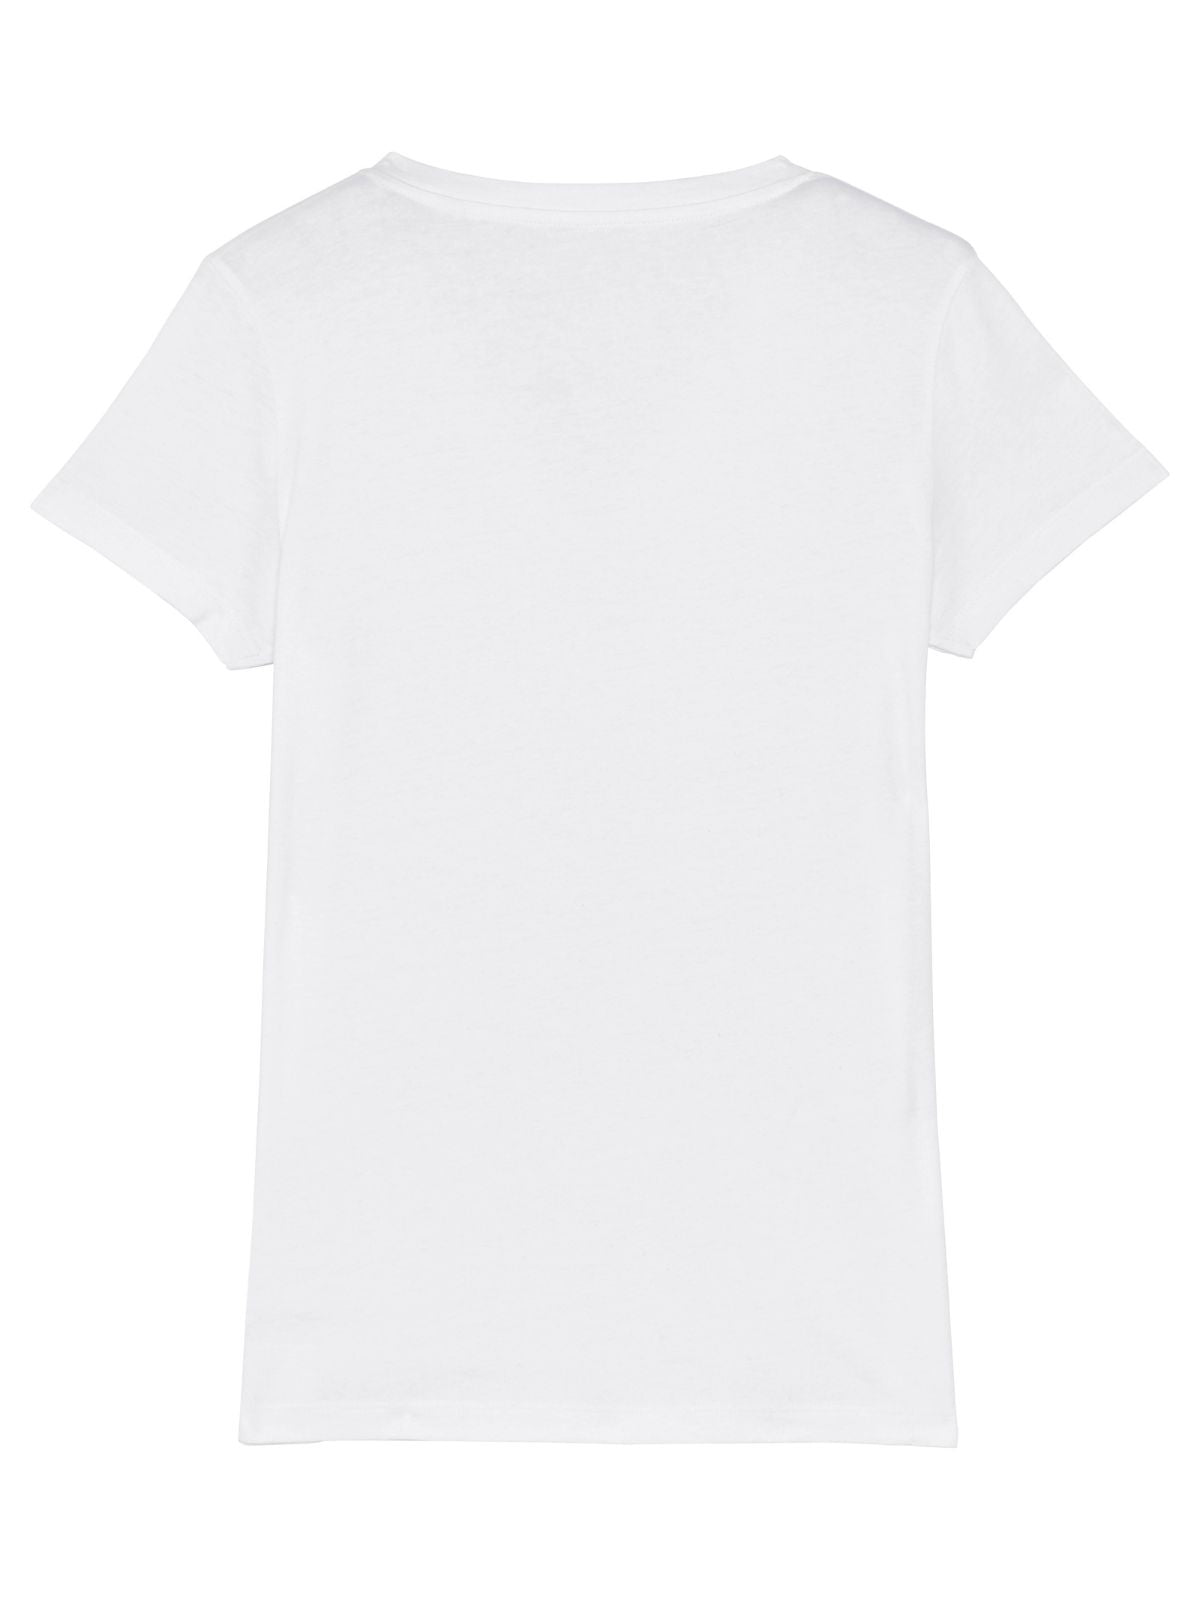 Damen T-Shirt V-Neck White